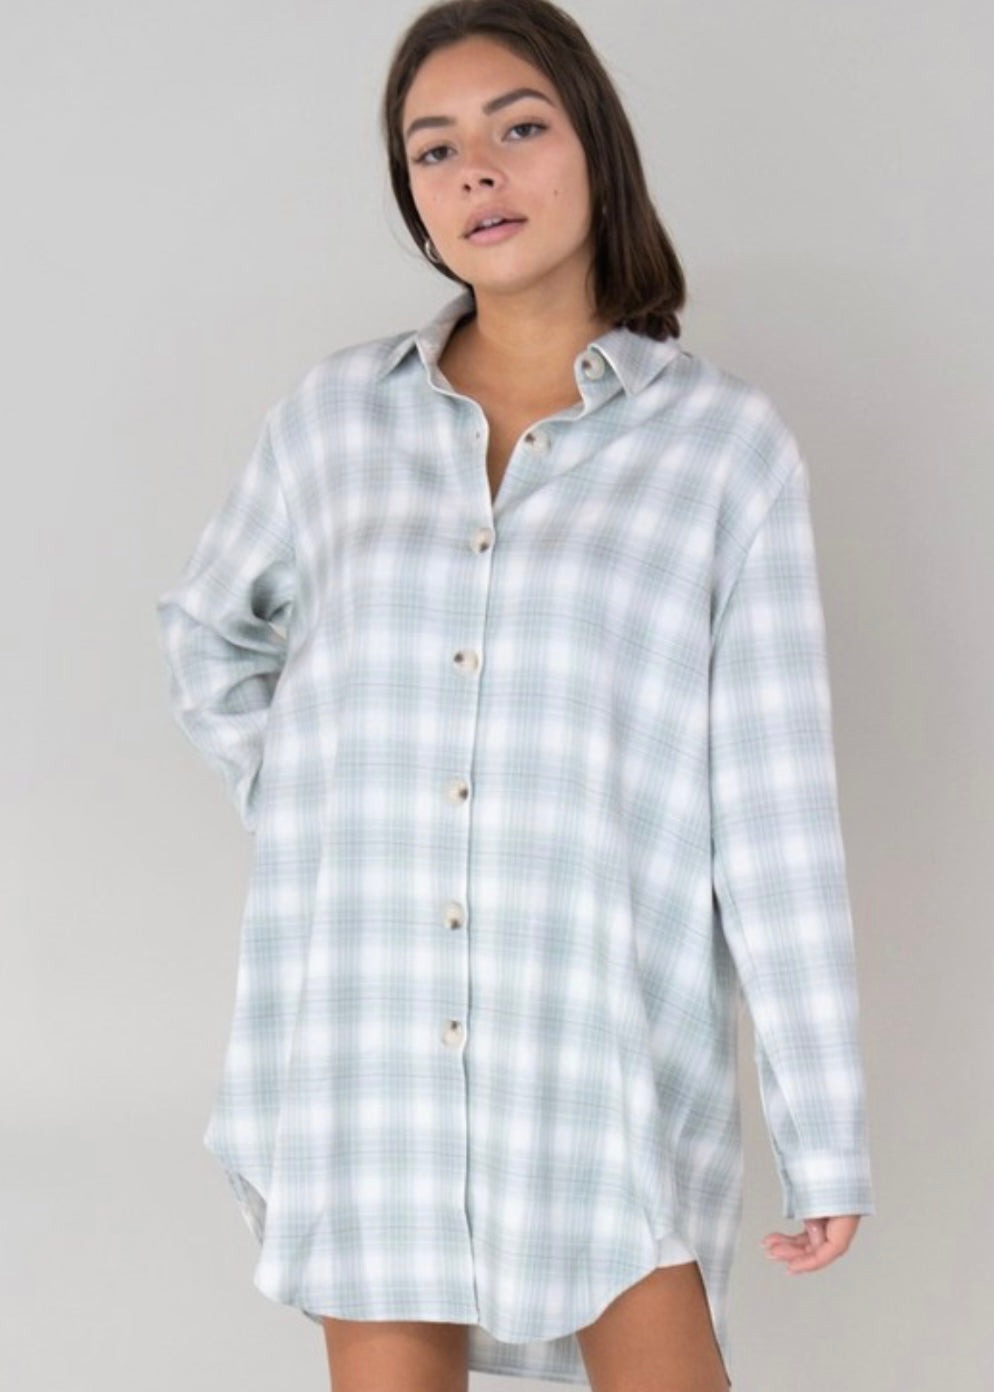 “Bristol” checkered shirt dress